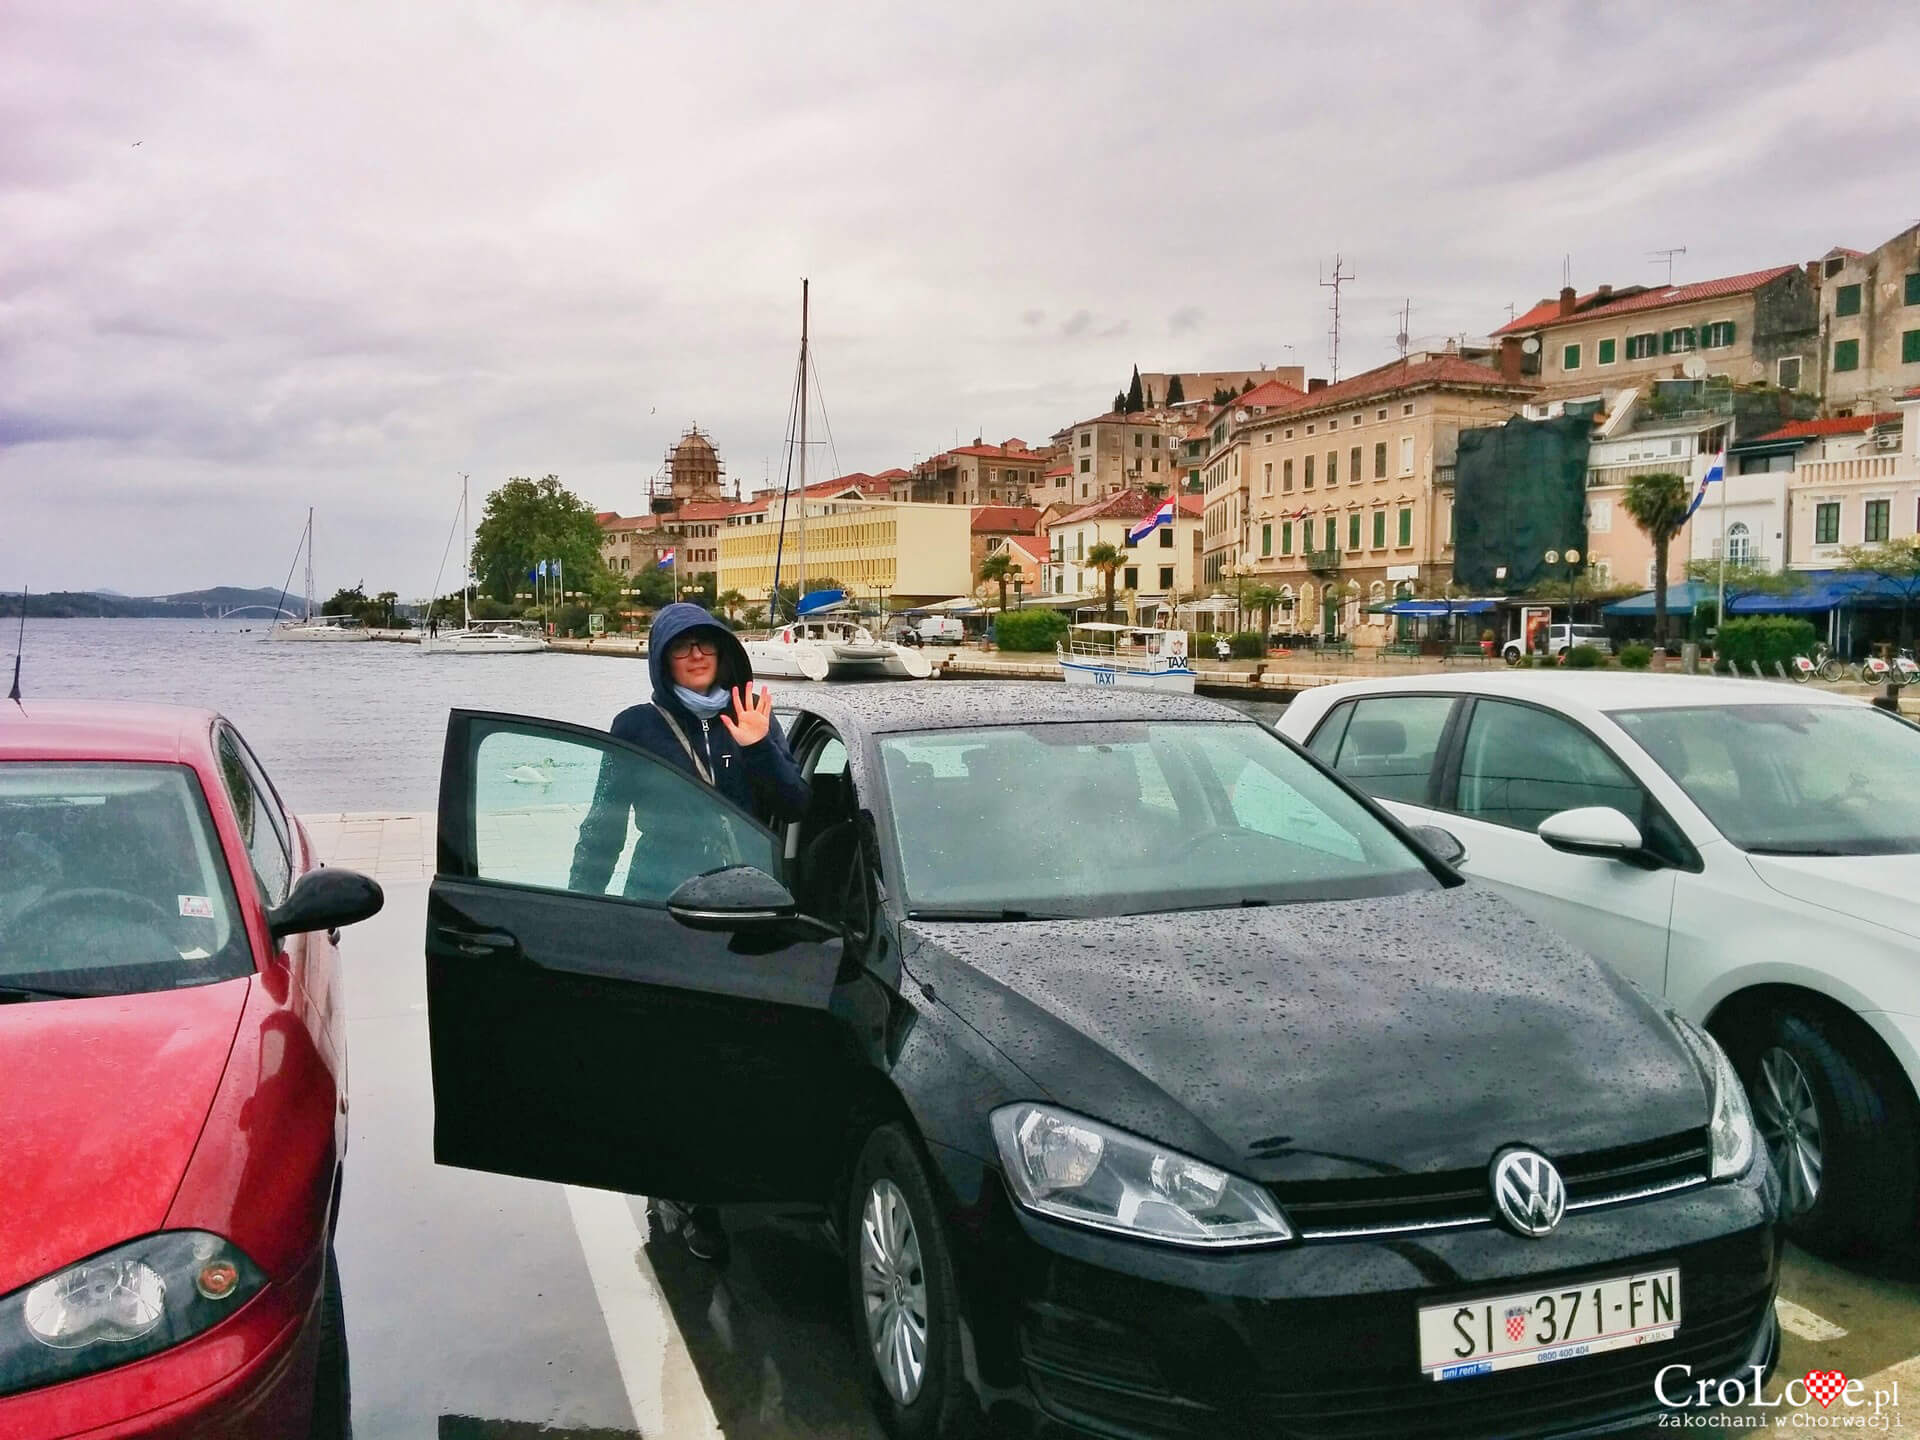 Wynajem samochodu w Chorwacji